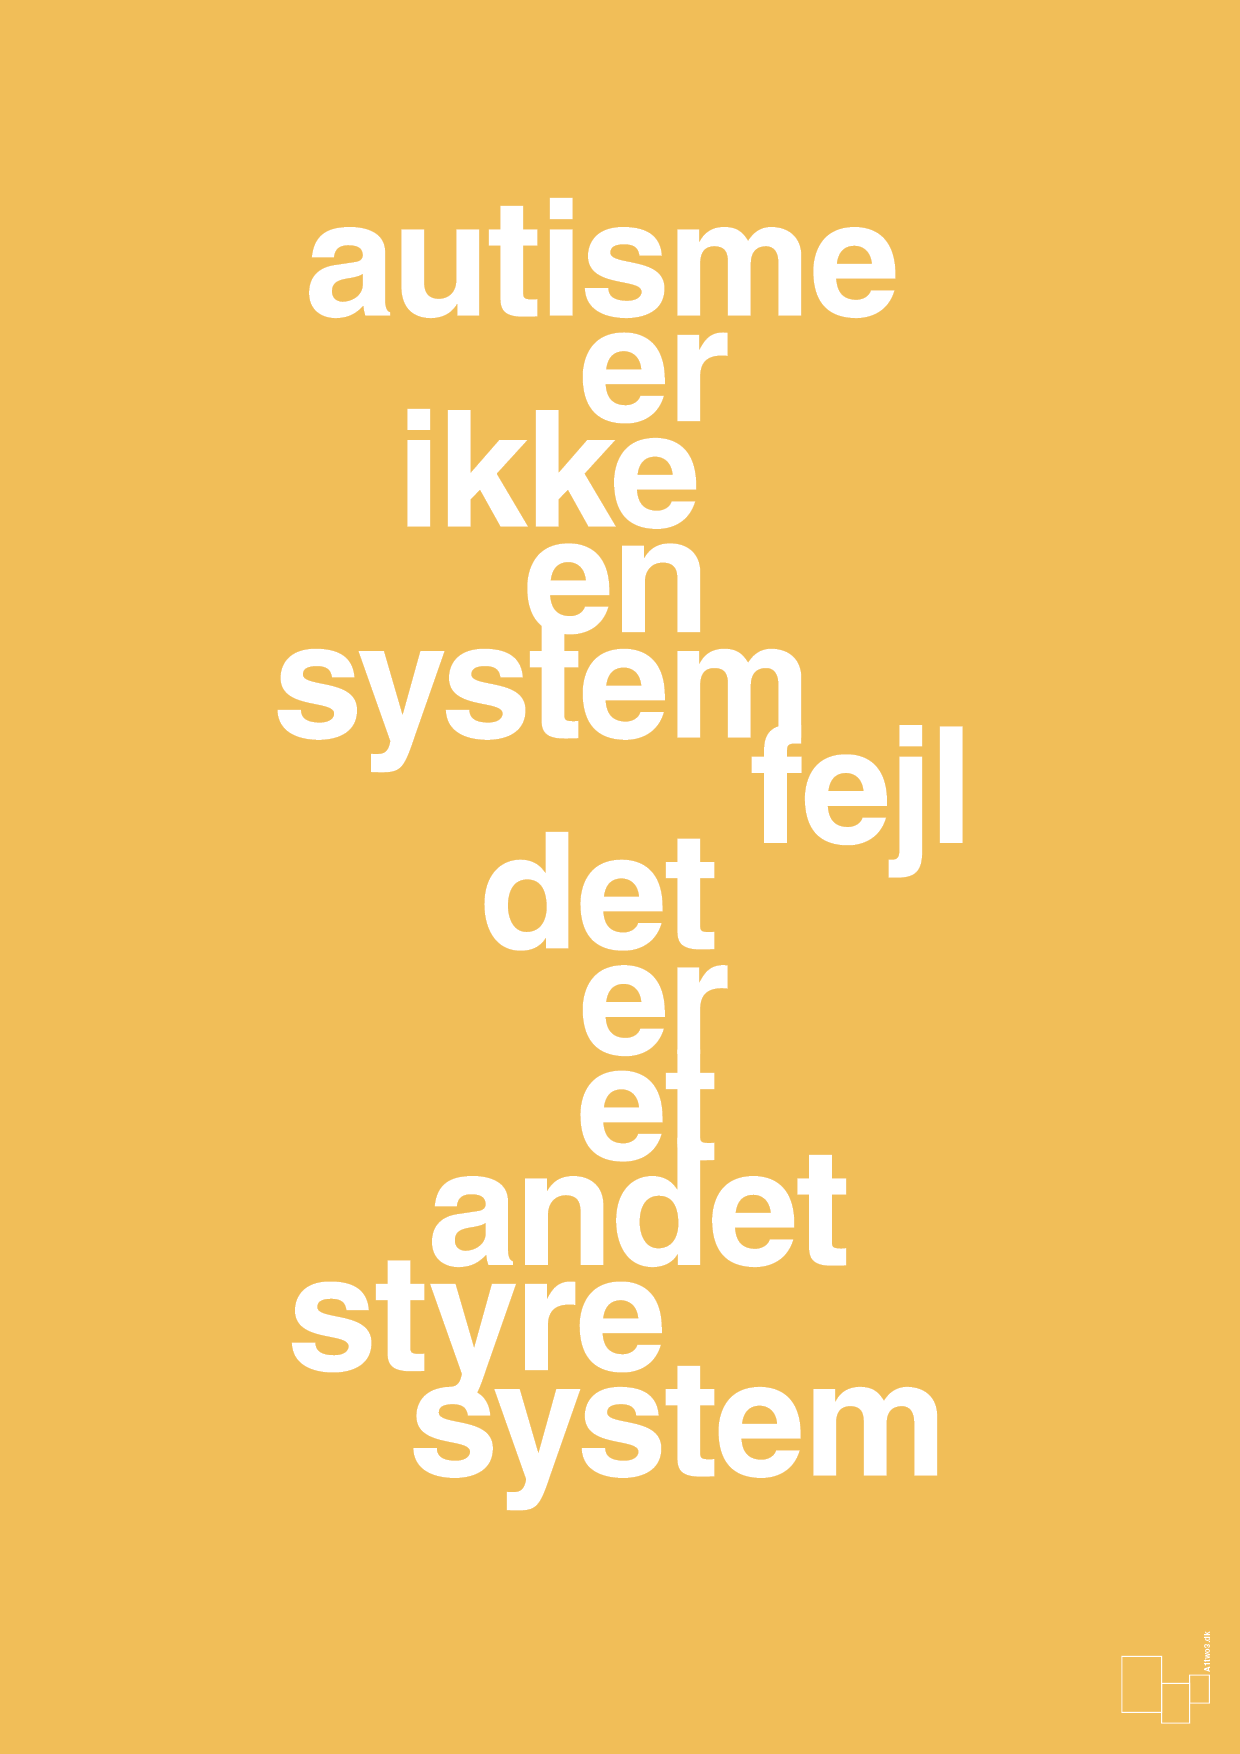 autisme er ikke en systemfejl - Plakat med Samfund i Honeycomb